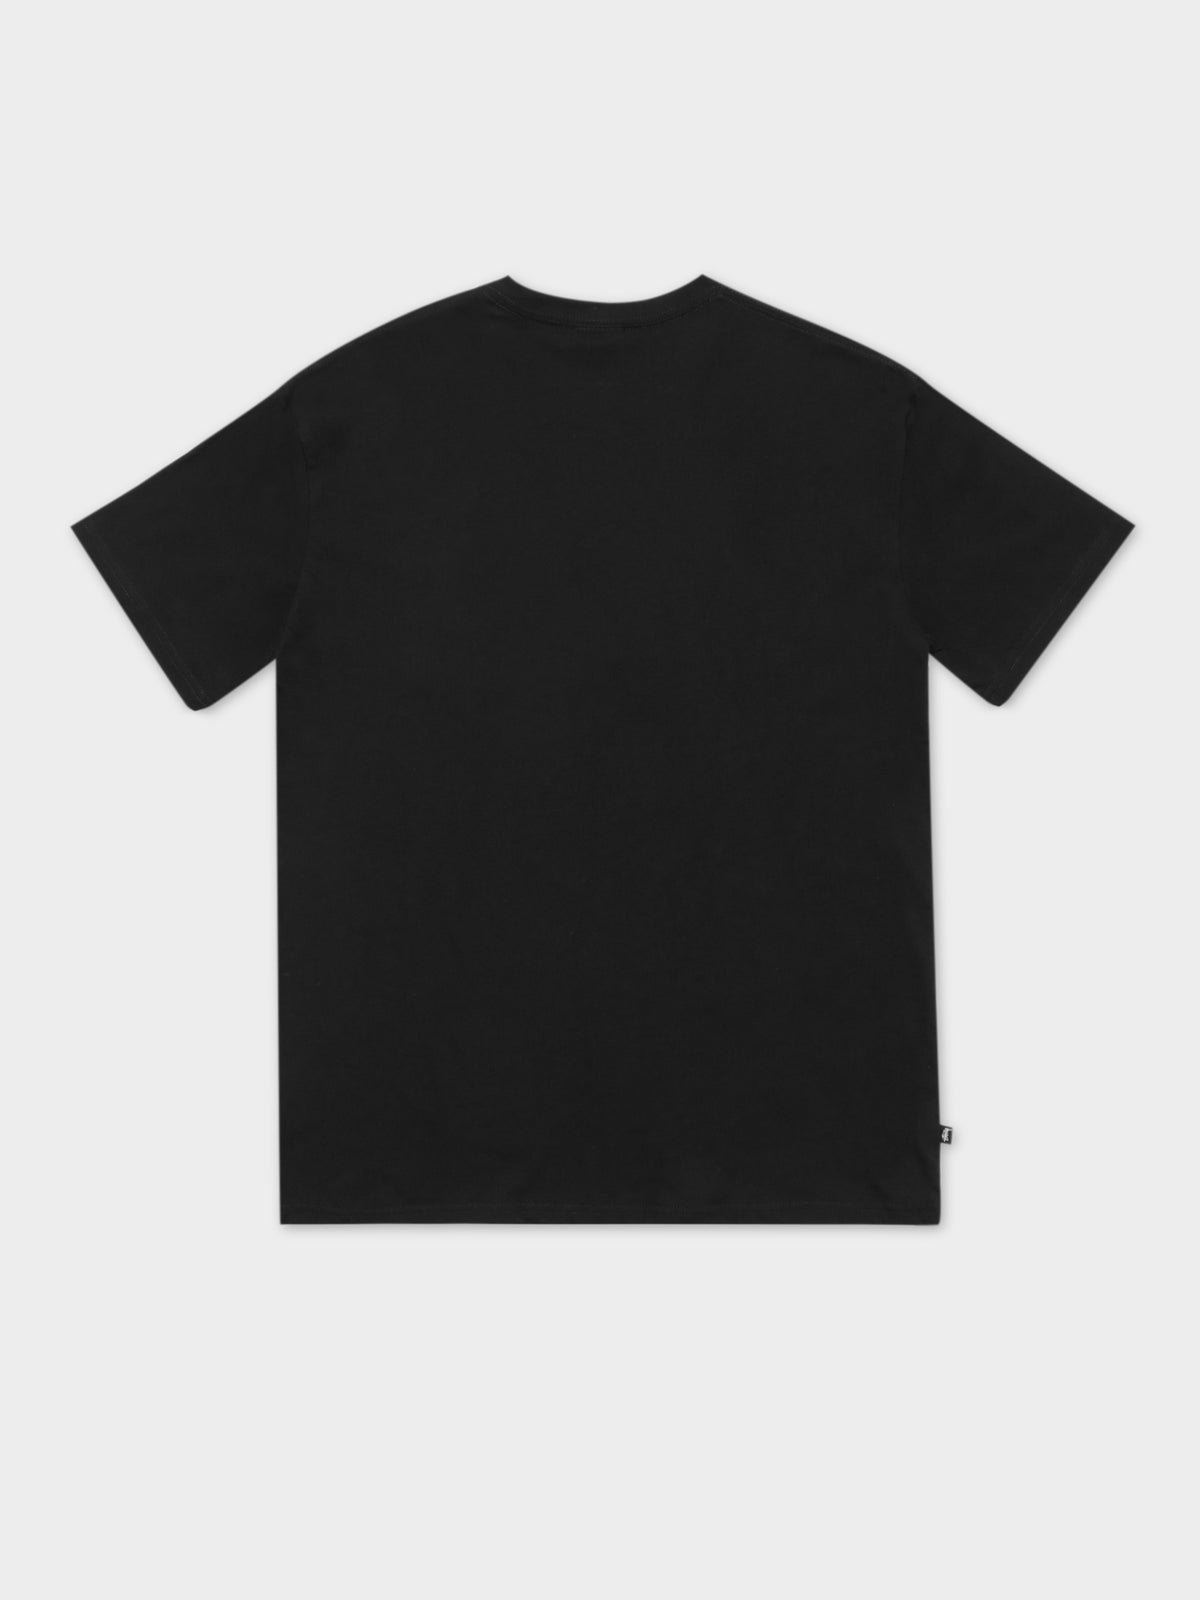 Graffiti Short Sleeve Pocket T-Shirt in Black